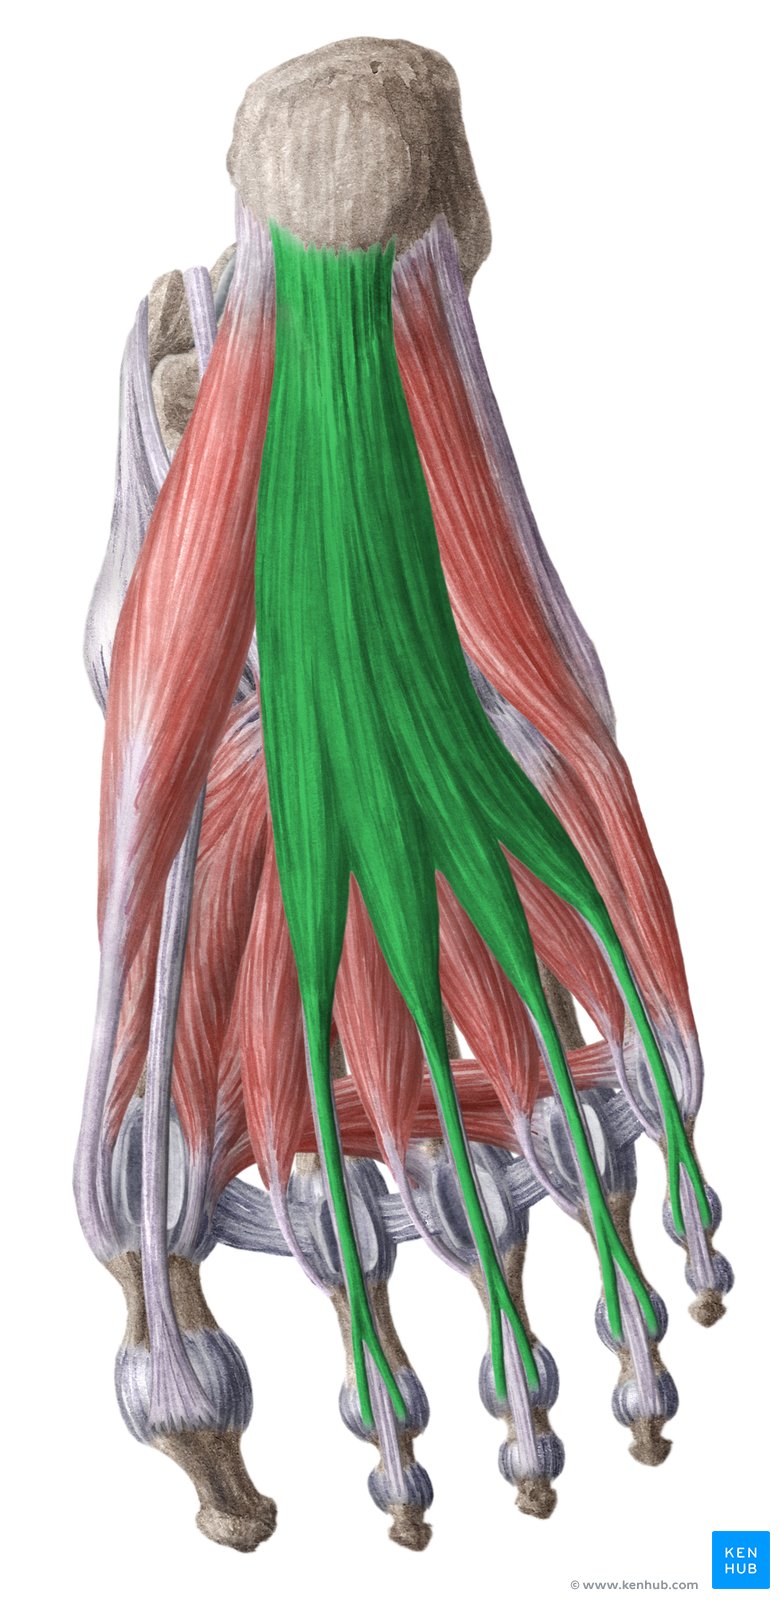 Flexor digitorum brevis muscle